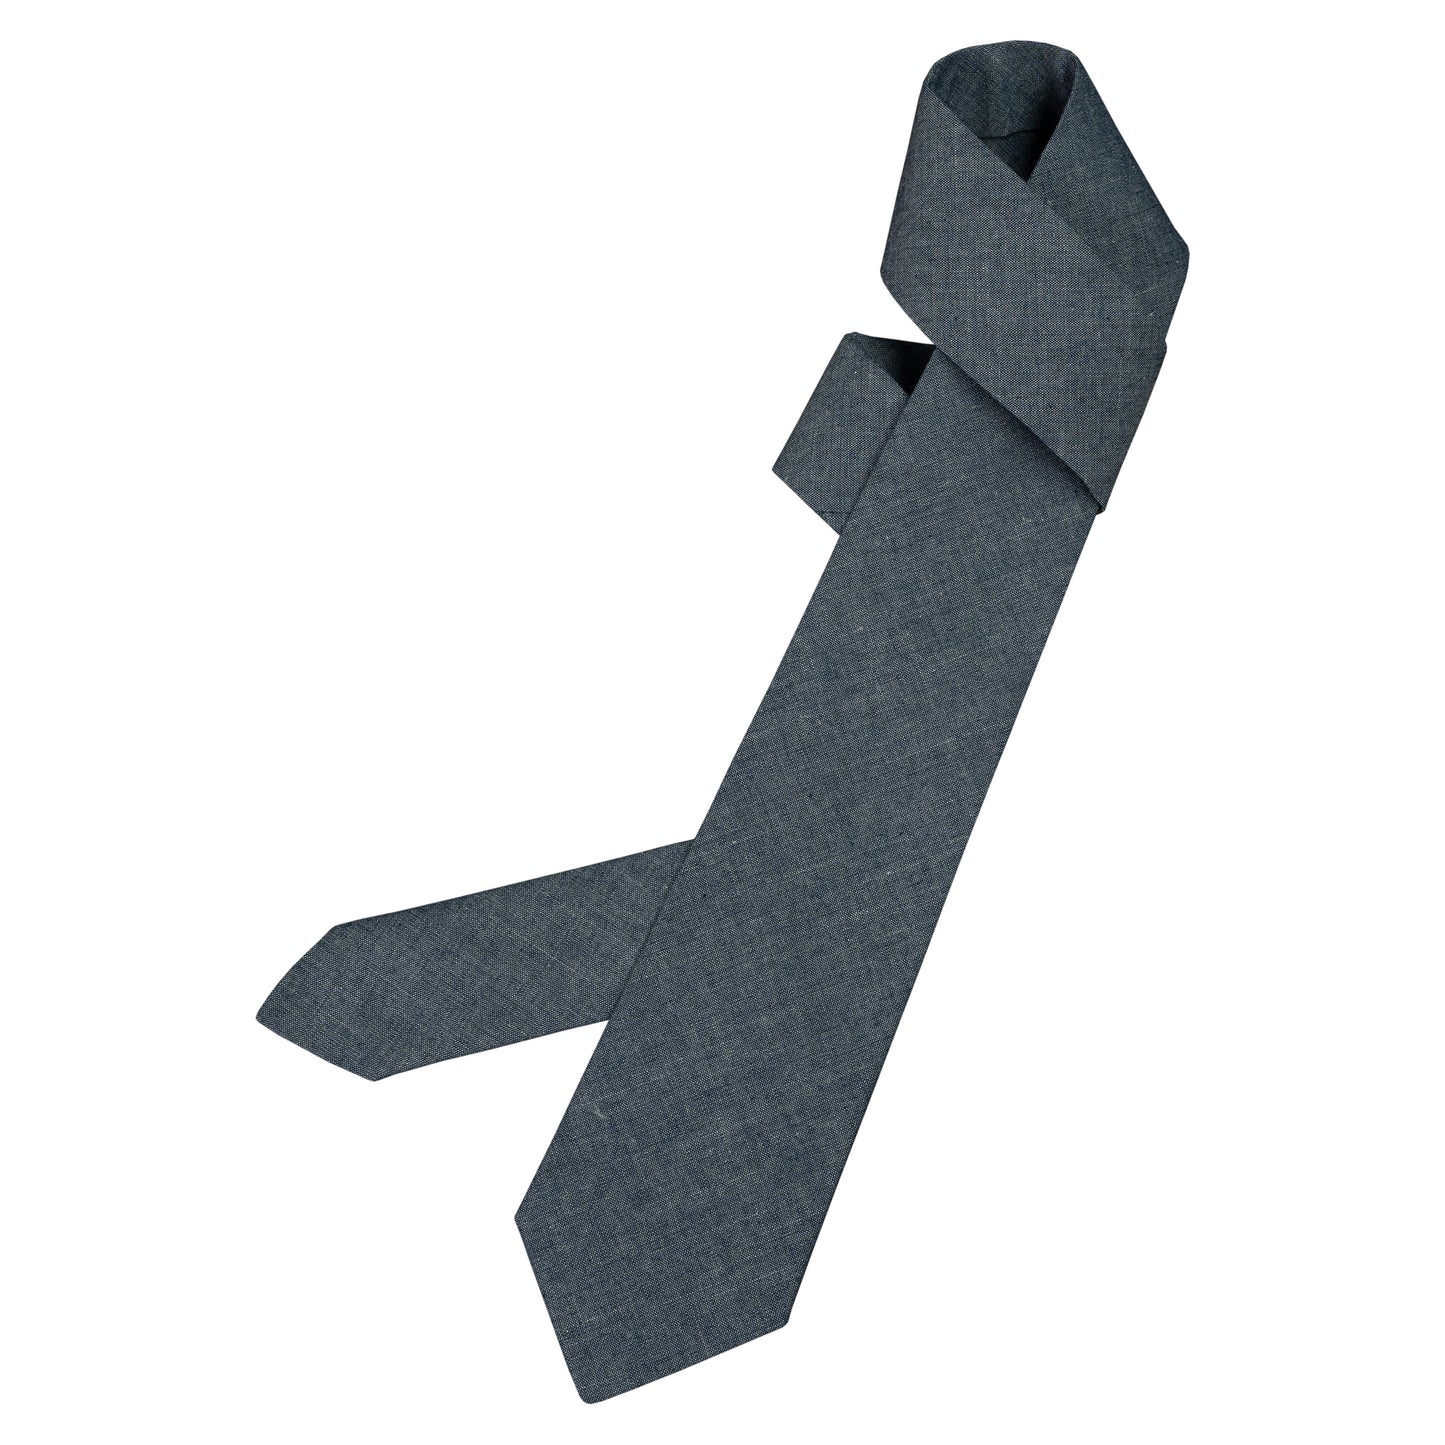 Tie Chambray Blue | Krawatte